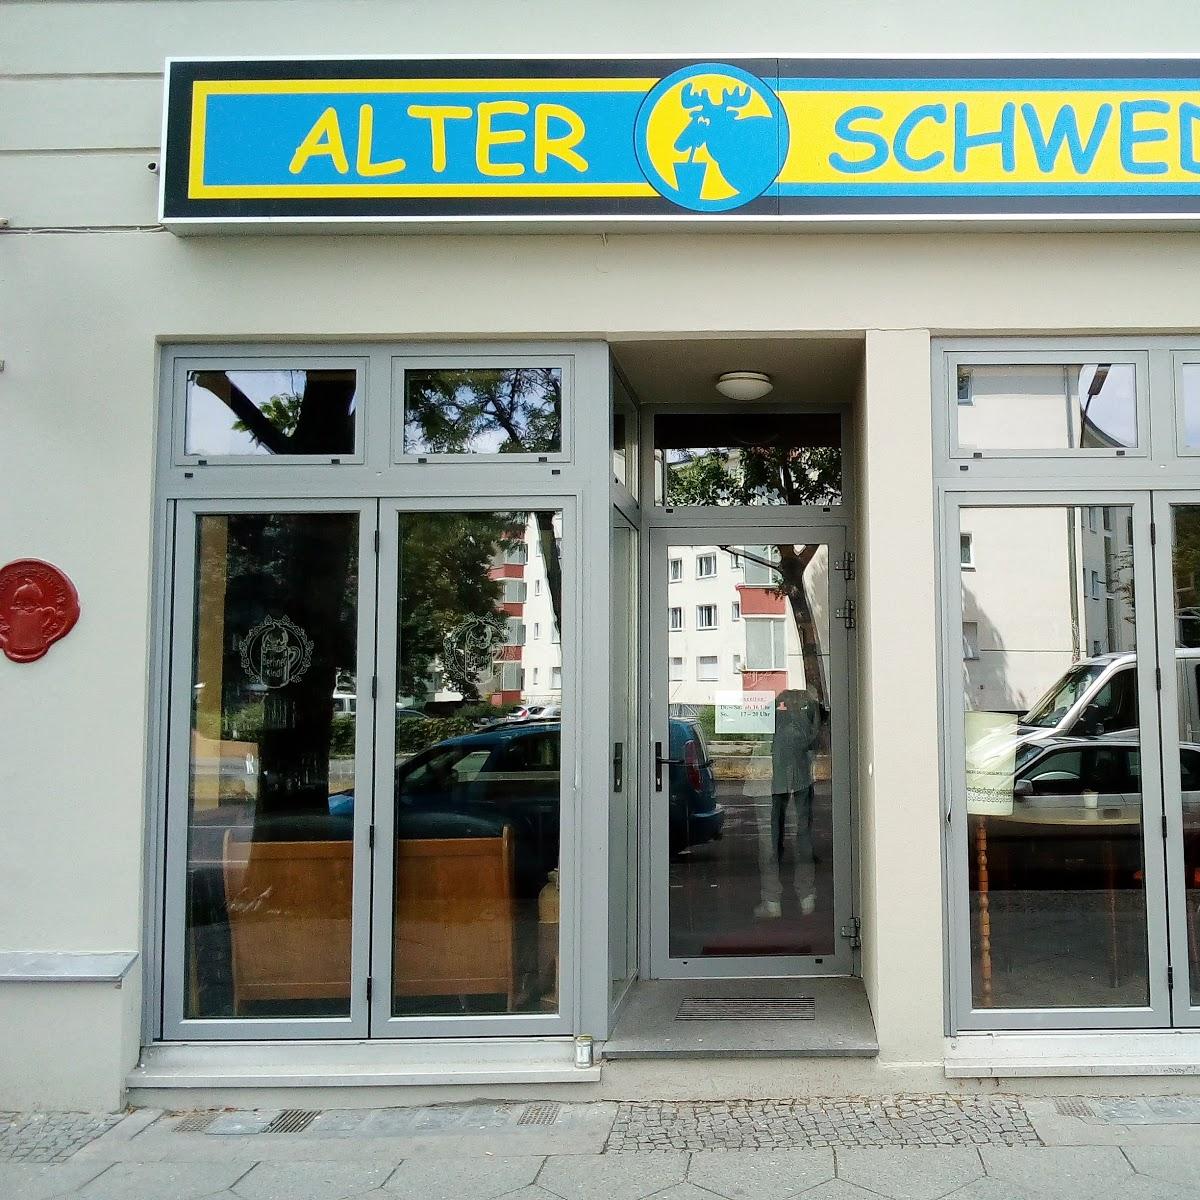 Restaurant "Alter Schwede Pub" in Berlin